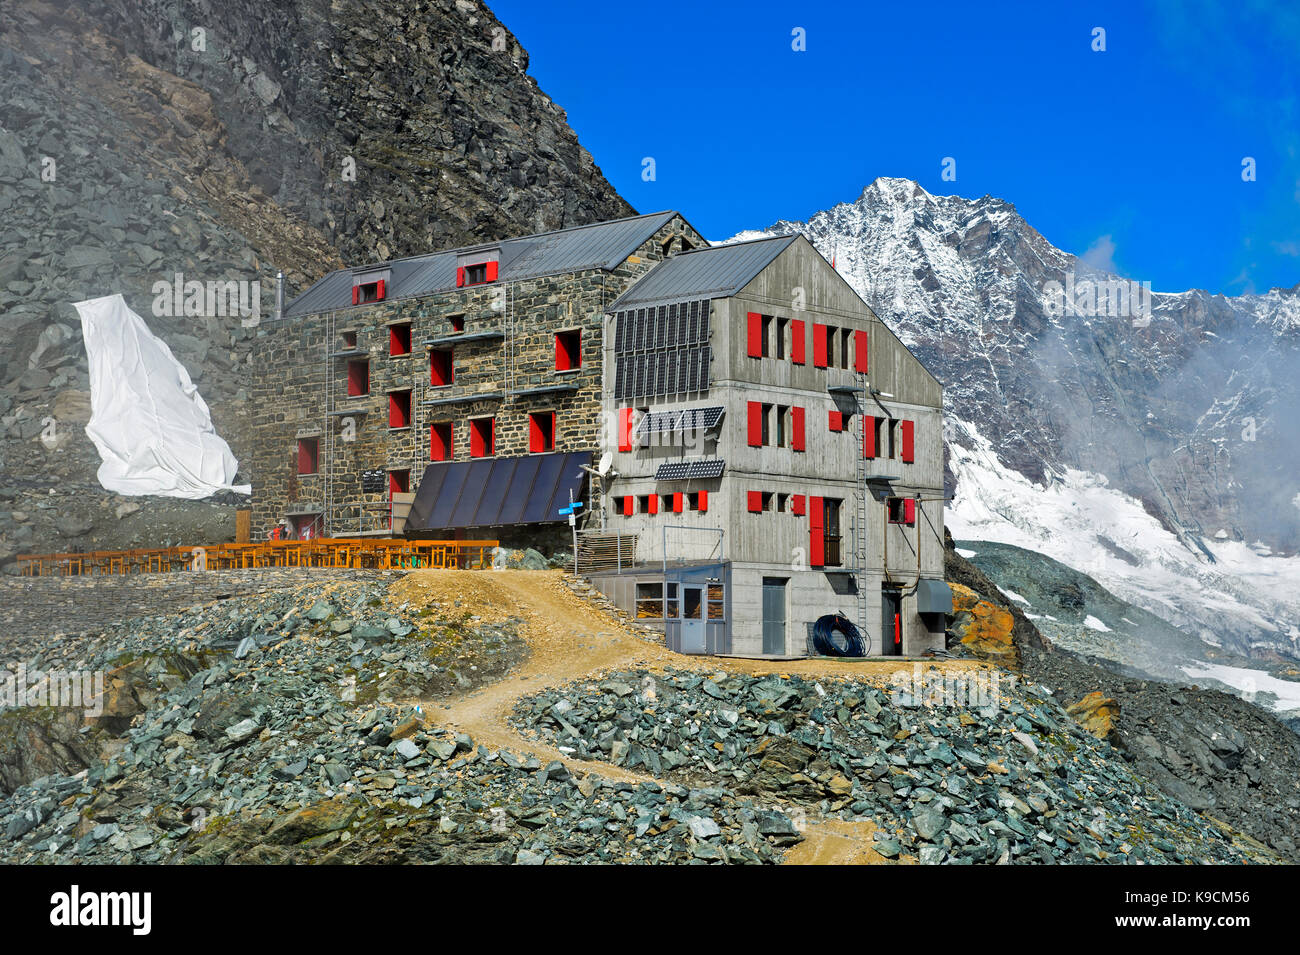 Cabane de montagne Britannia-Hütte, Saas-Fee, Valais, Suisse Banque D'Images